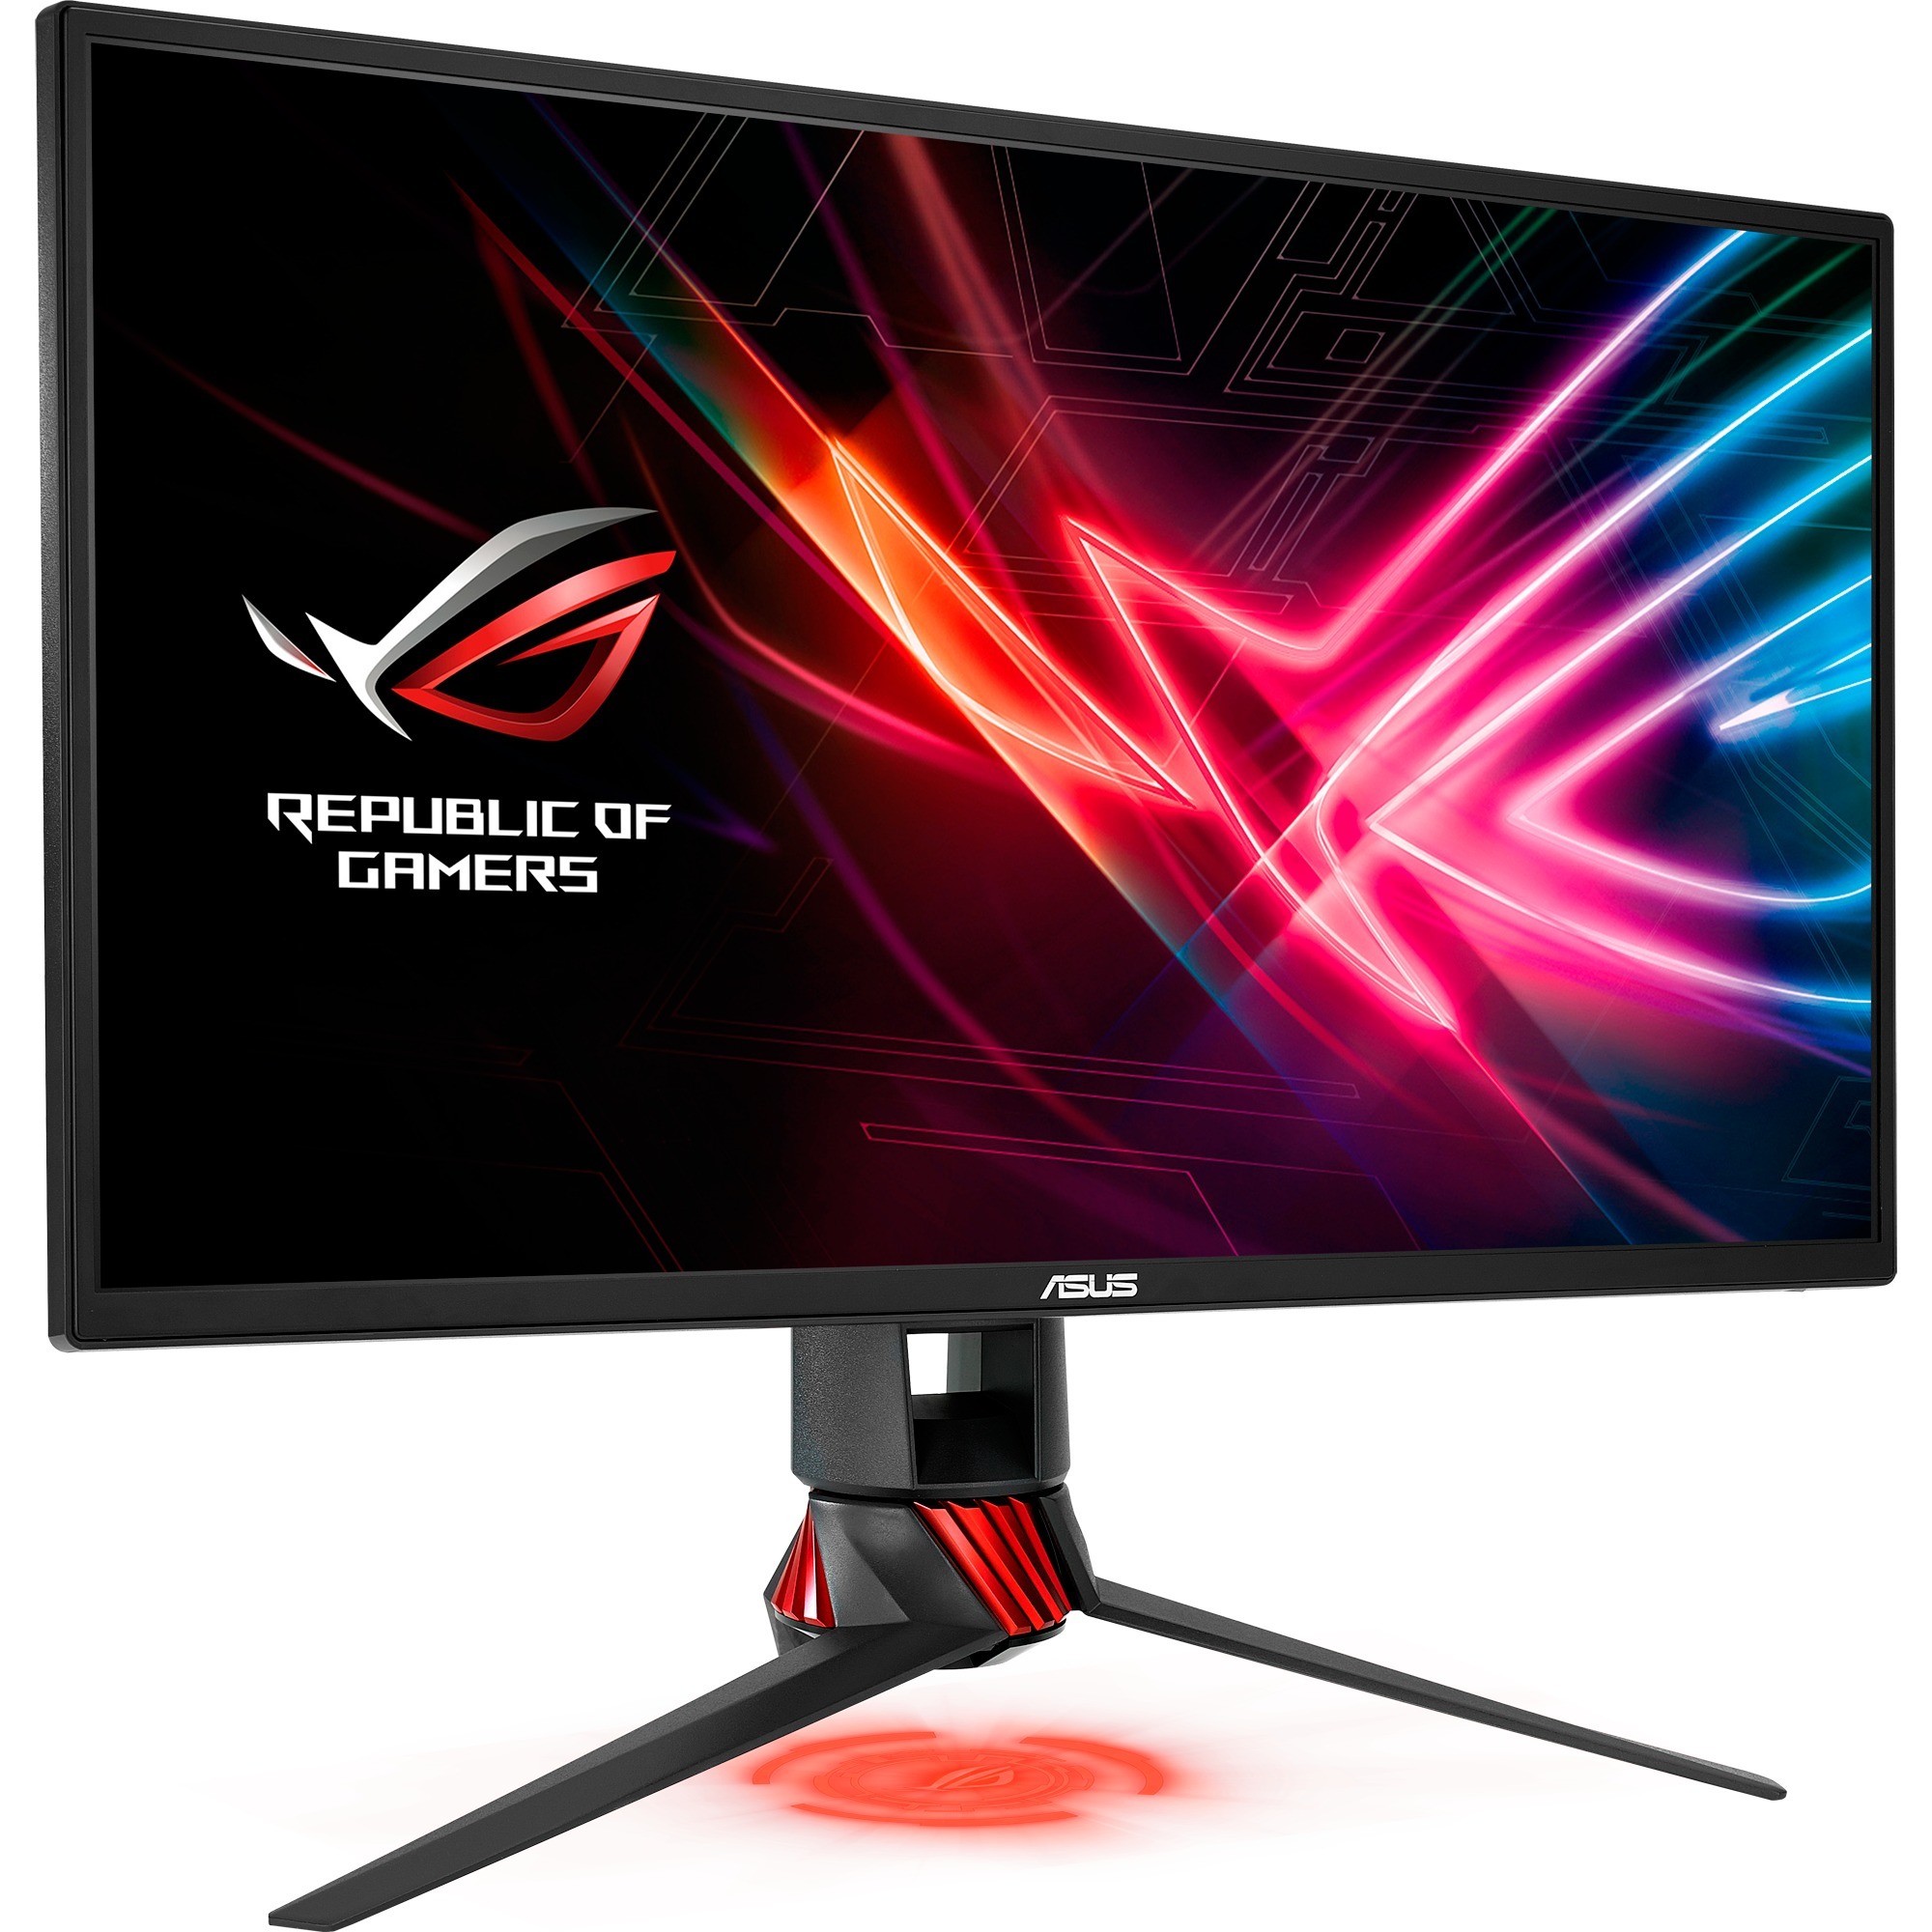 XG258Q monitor komputerowy 62,2 cm (24.5") Full HD LED (Dioda elektroluminescencyjna) Płaski Czarny, Czerwony, LED monitor